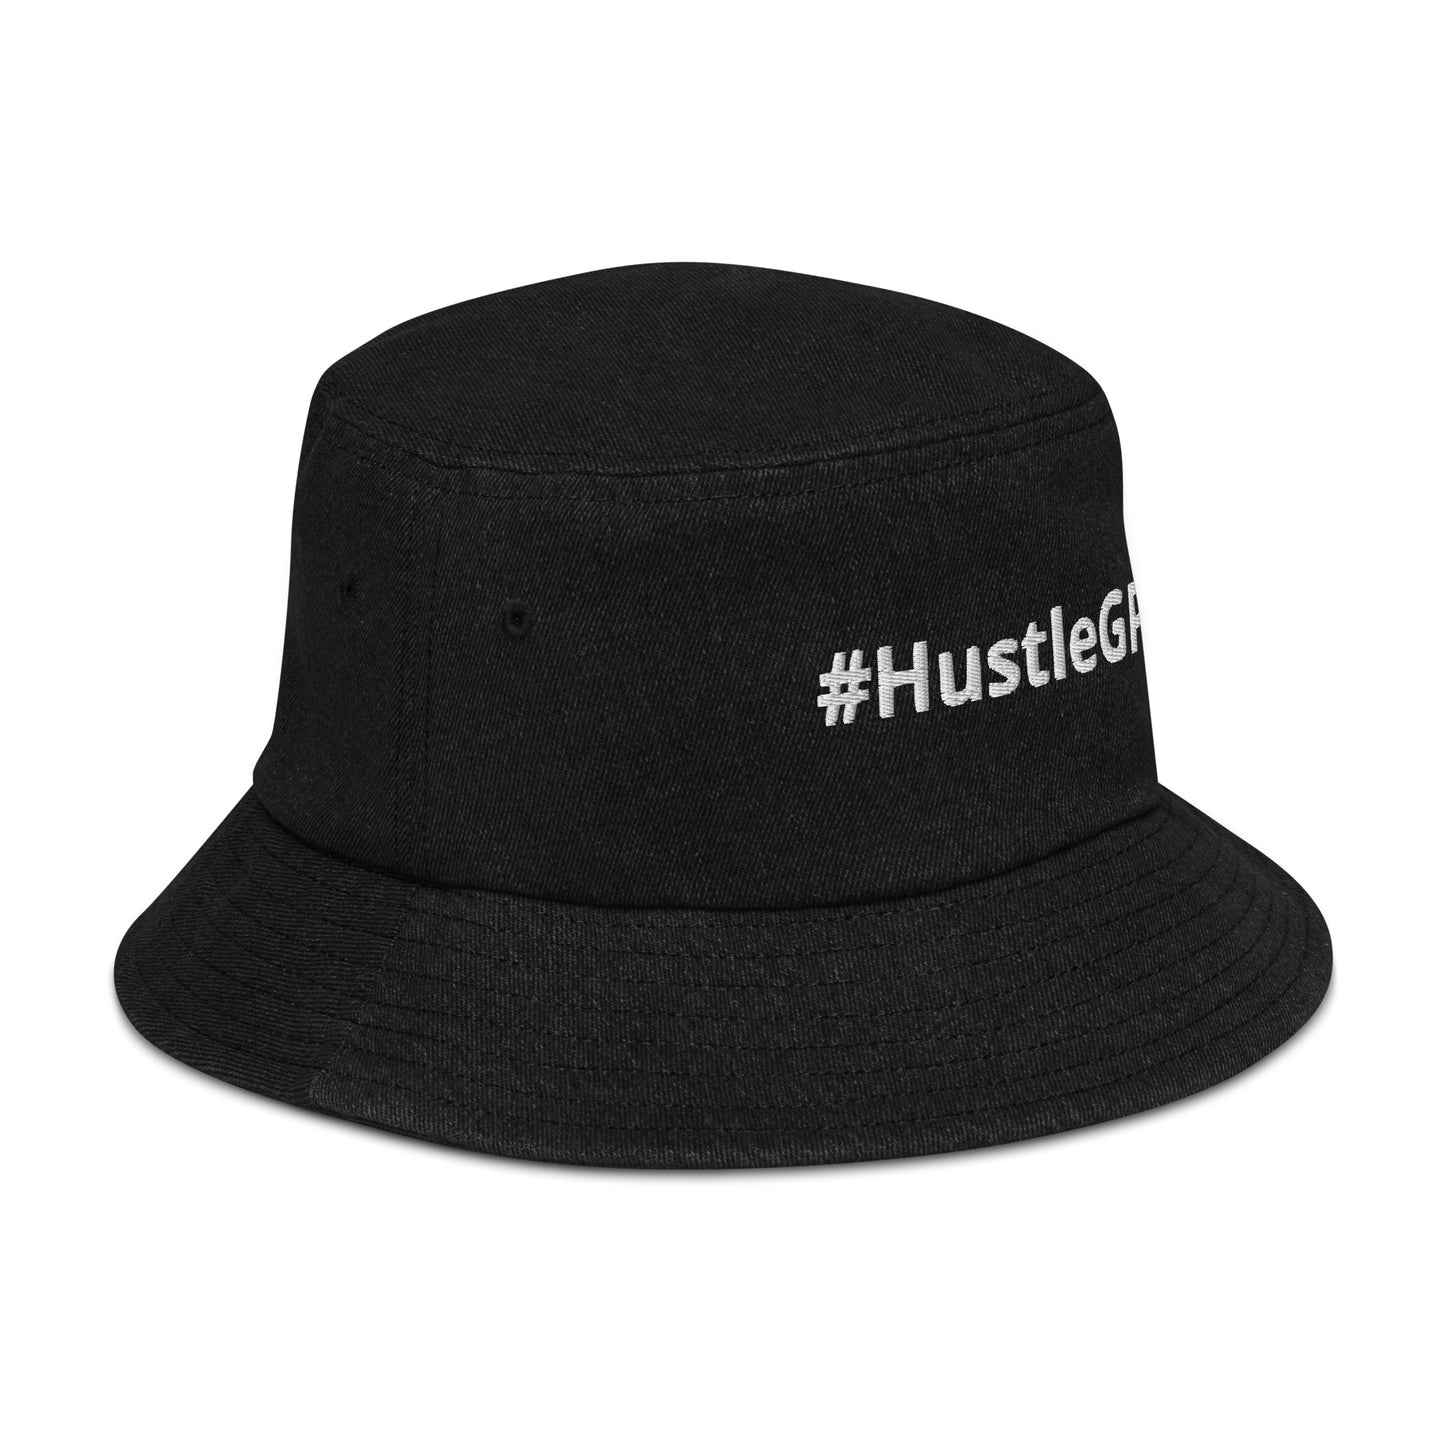 #HustleGPT - Denim bucket hat